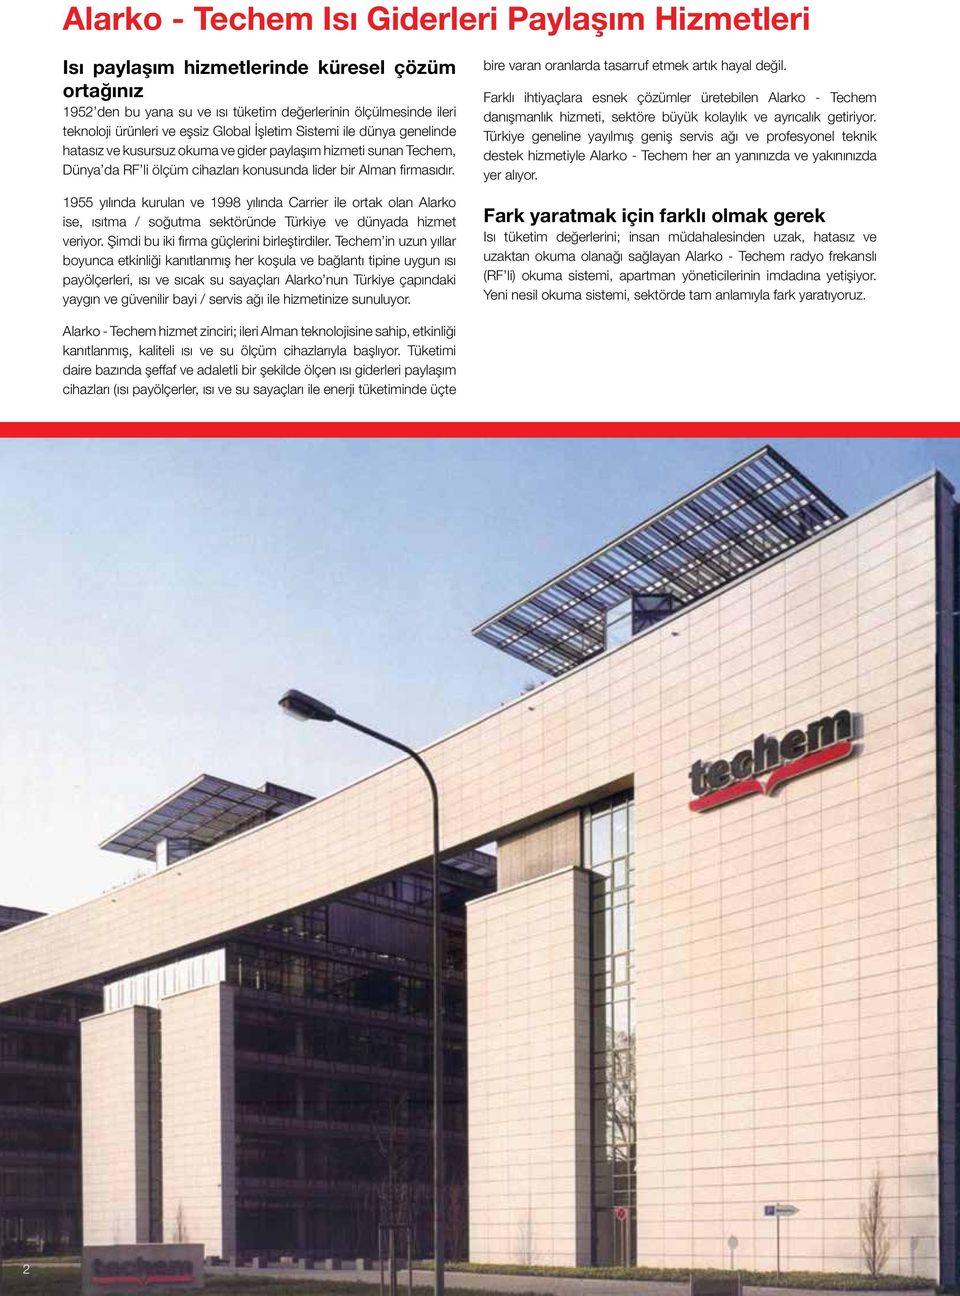 1955 yılında kurulan ve 1998 yılında Carrier ile ortak olan Alarko ise, ısıtma / soğutma sektöründe Türkiye ve dünyada hizmet veriyor. Şimdi bu iki firma güçlerini birleştirdiler.